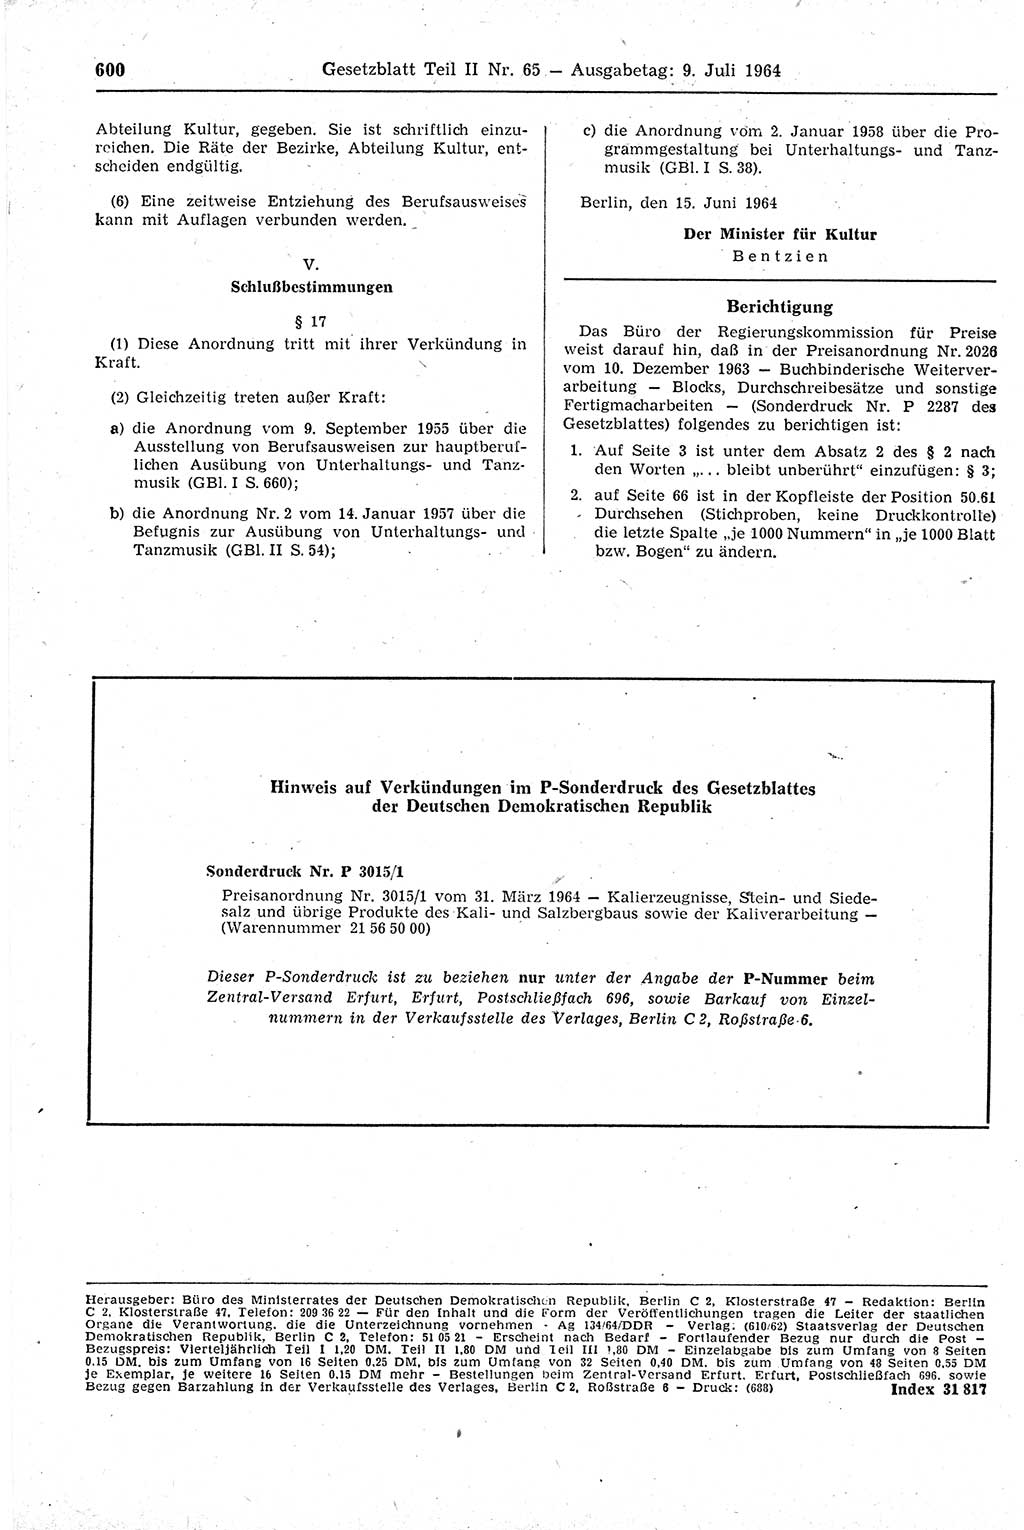 Gesetzblatt (GBl.) der Deutschen Demokratischen Republik (DDR) Teil ⅠⅠ 1964, Seite 600 (GBl. DDR ⅠⅠ 1964, S. 600)